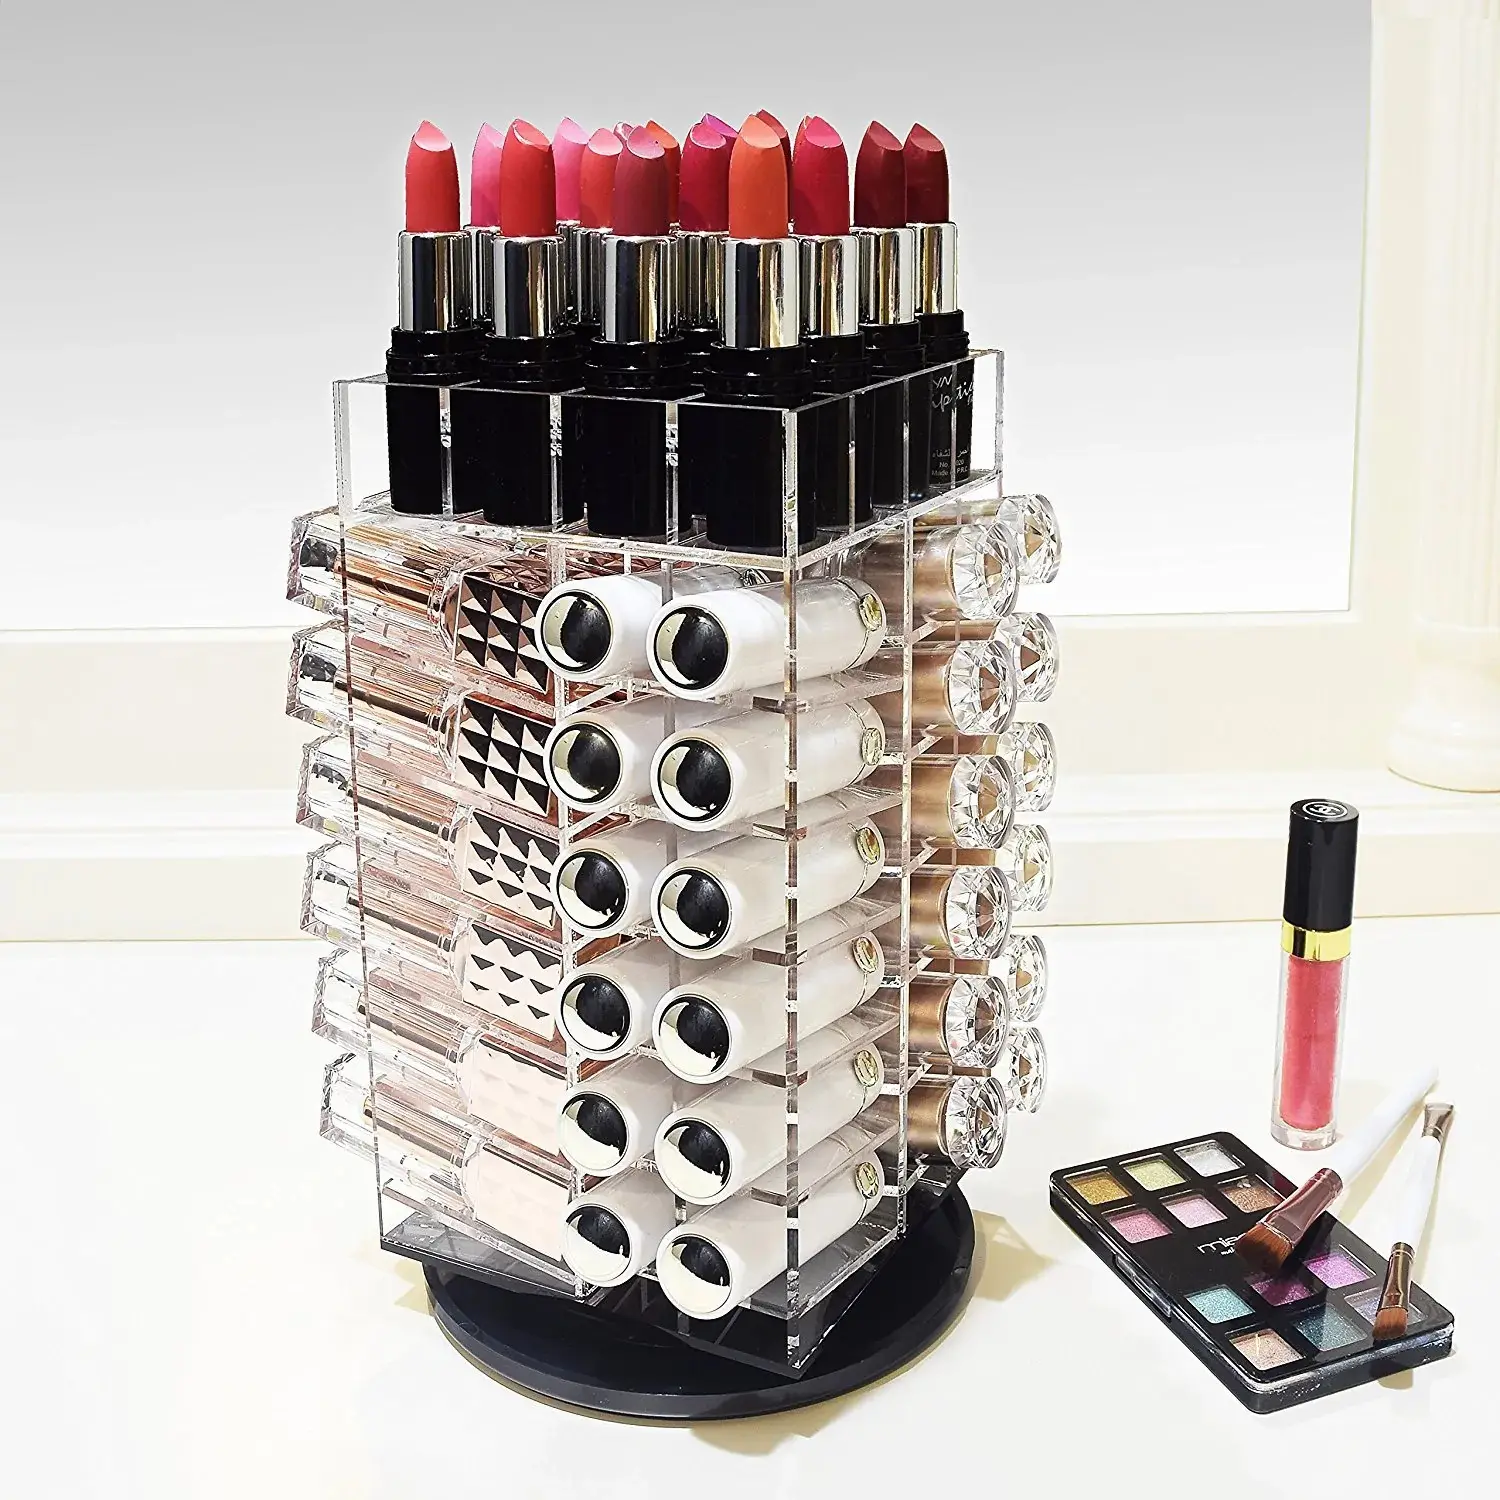 Torre de armazenamento de gloss labial, caixa rotativa de maquiagem 64 espaços organizador de batom acrílico